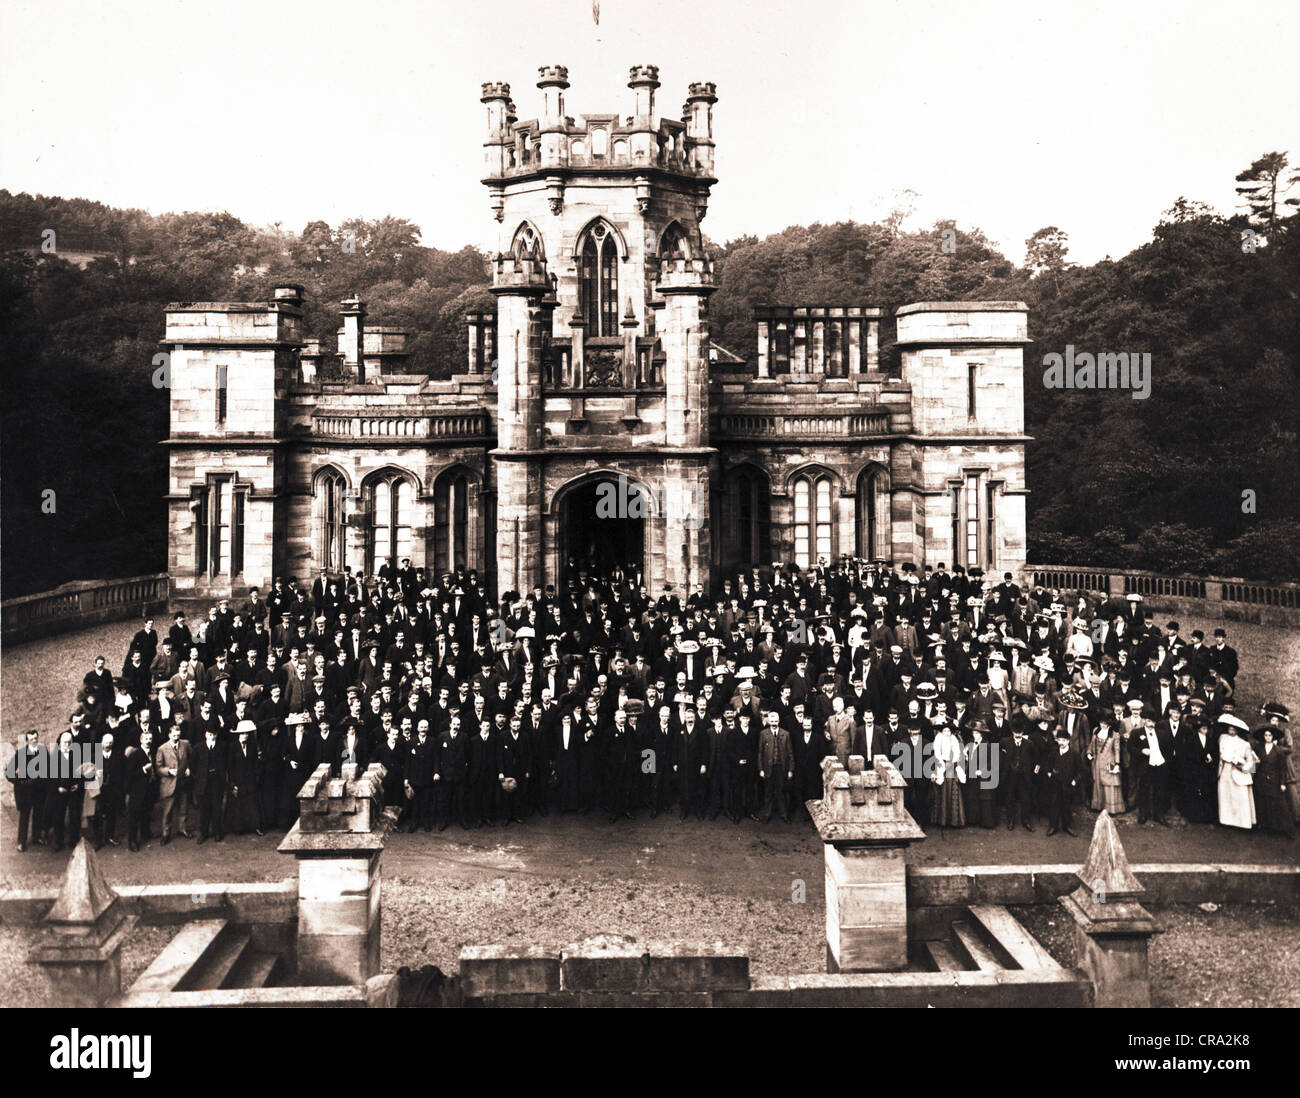 Gothic Revival Castle mit riesigen Schar von Menschen Stockfoto